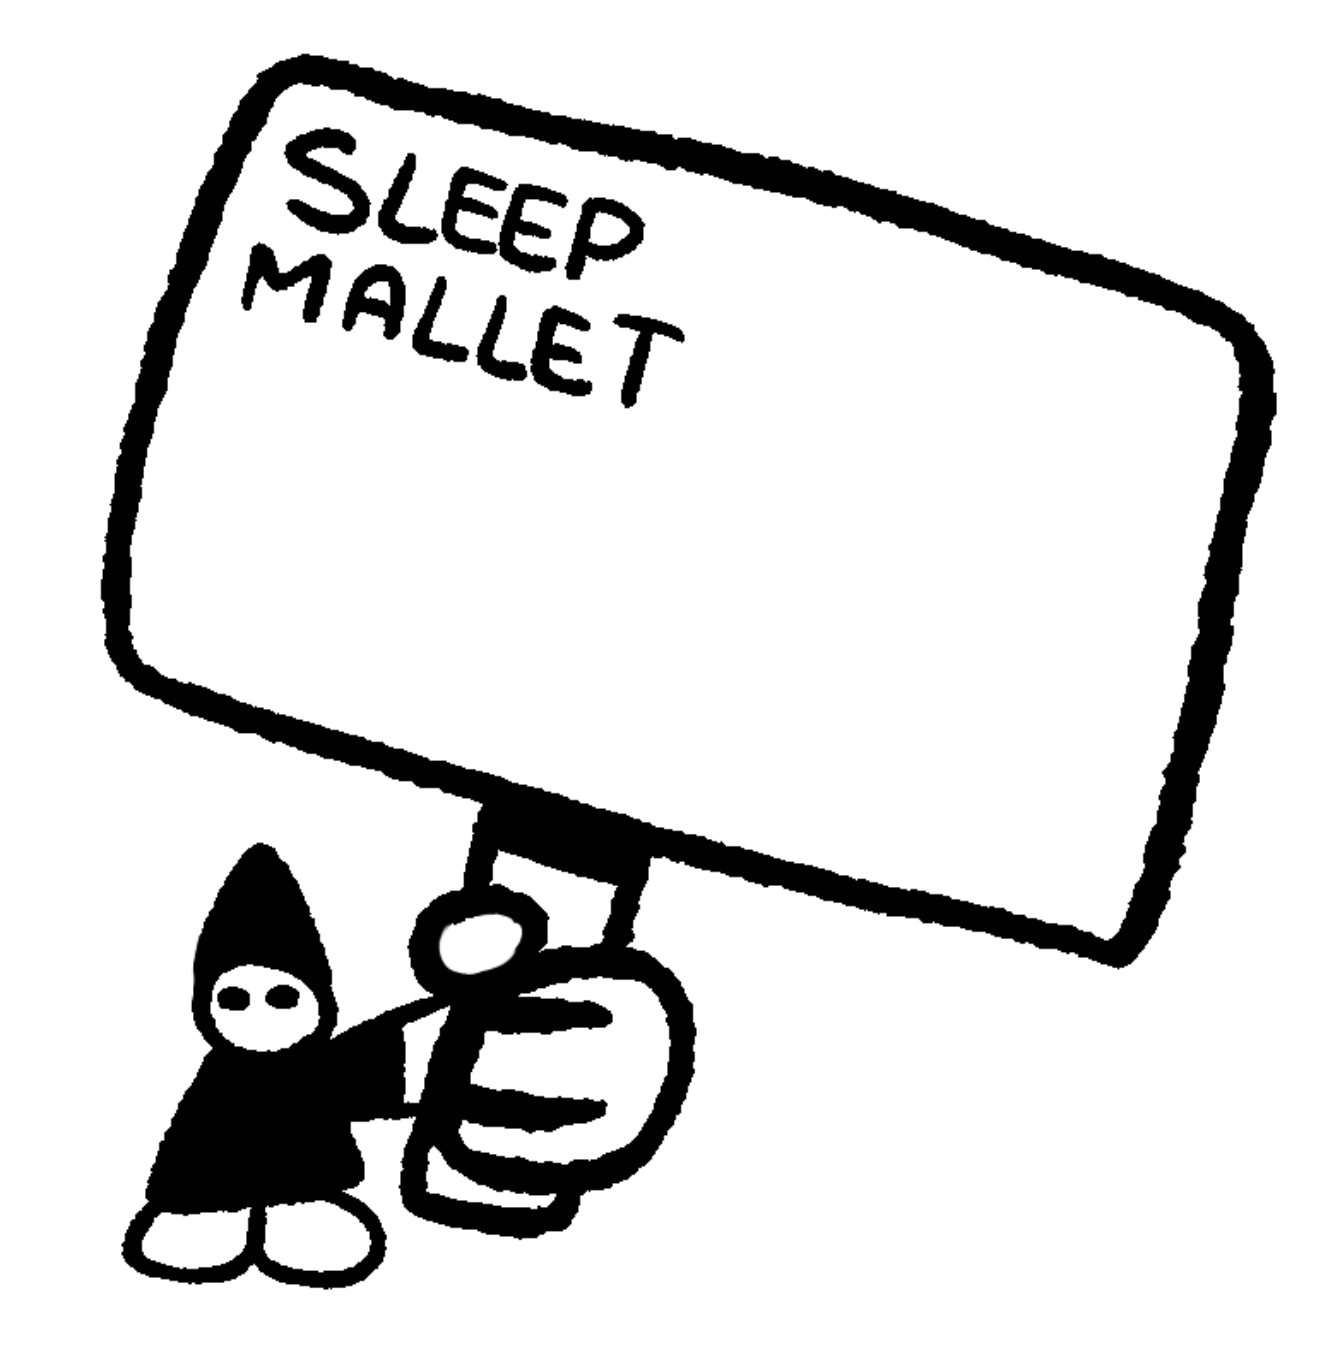 Sleep mallet